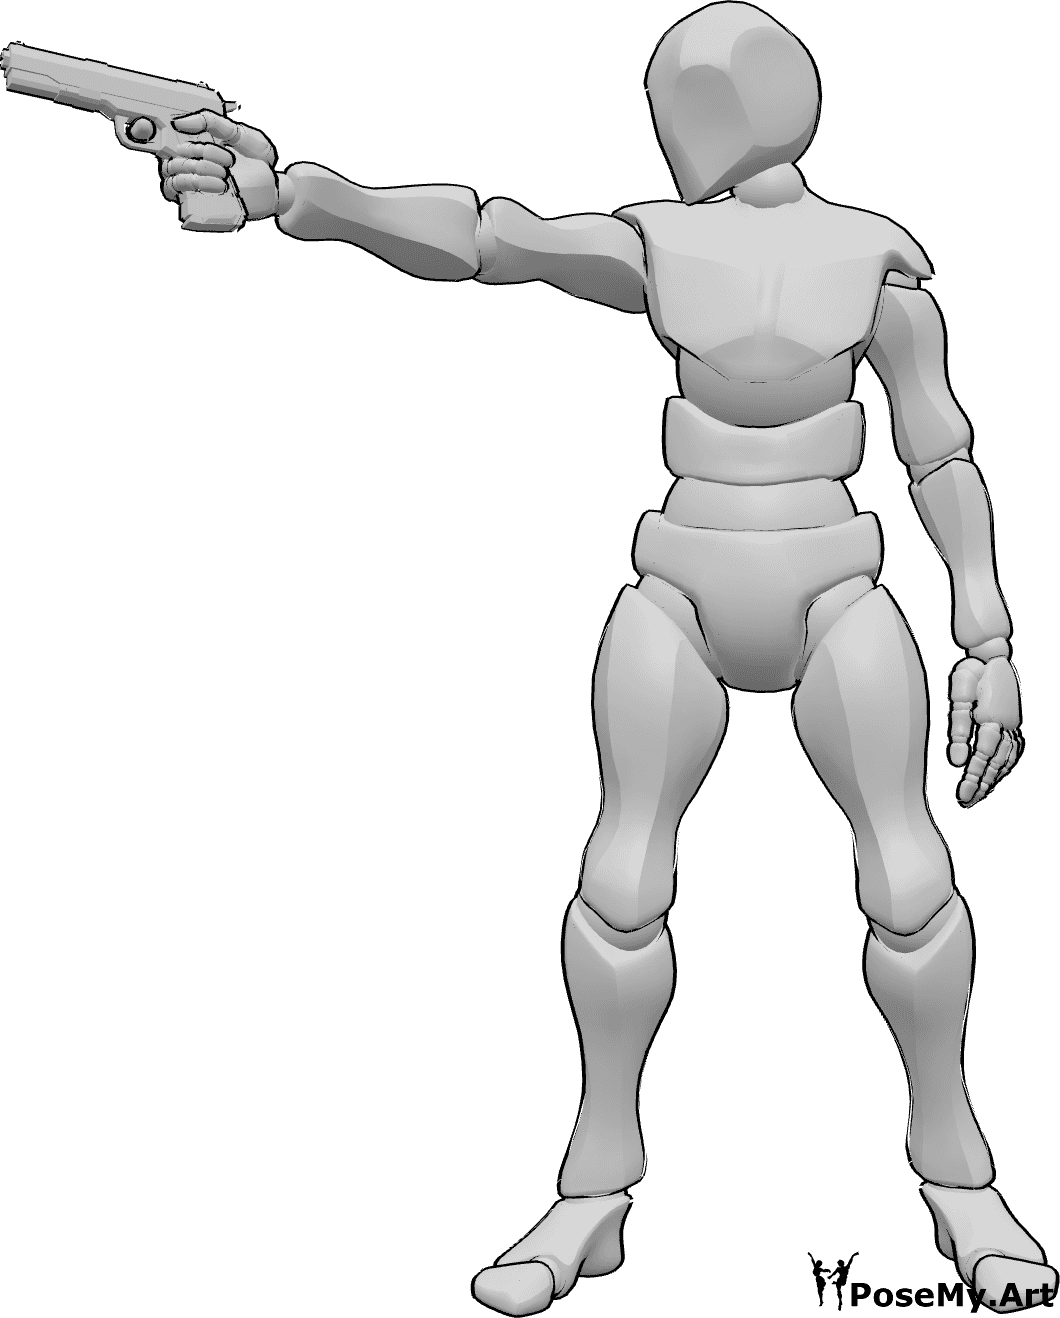 Riferimento alle pose- Uomo che punta la pistola - Uomo in piedi, tiene una pistola nella mano destra e mira a destra.